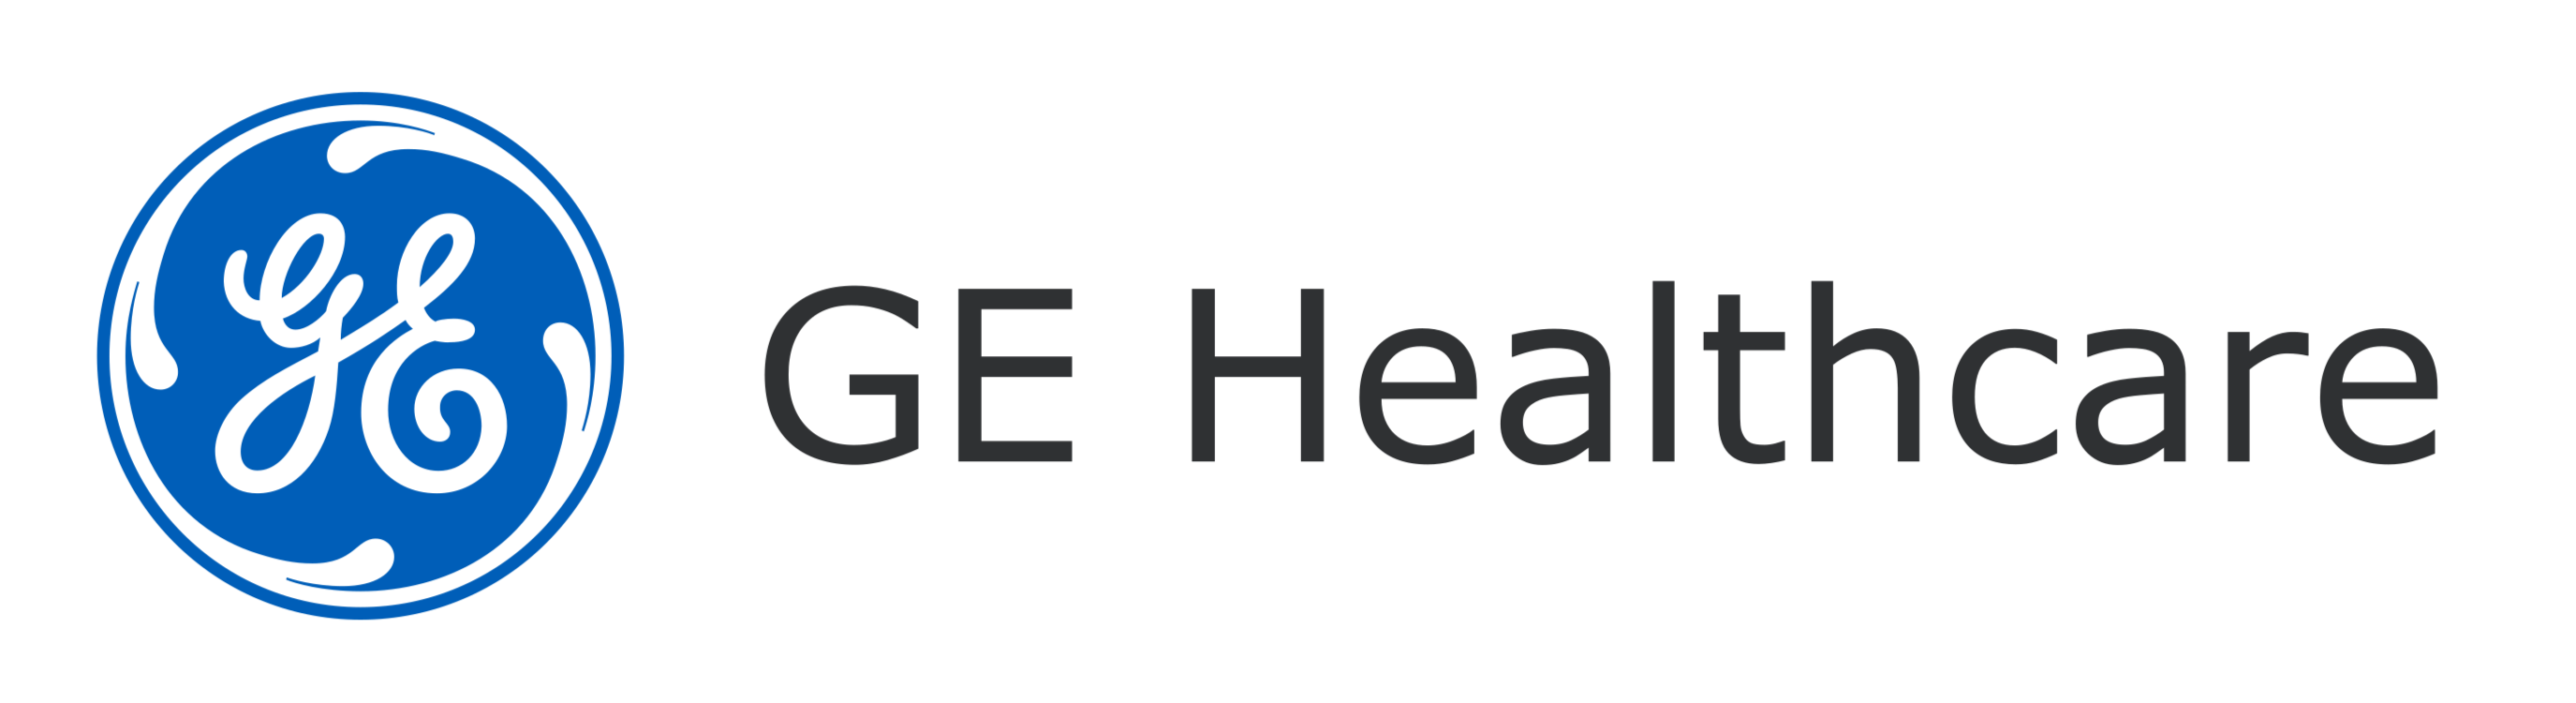 Logo GE Healthcare - Lien vers le site Healthcare - Ouverture dans un nouvel onglet